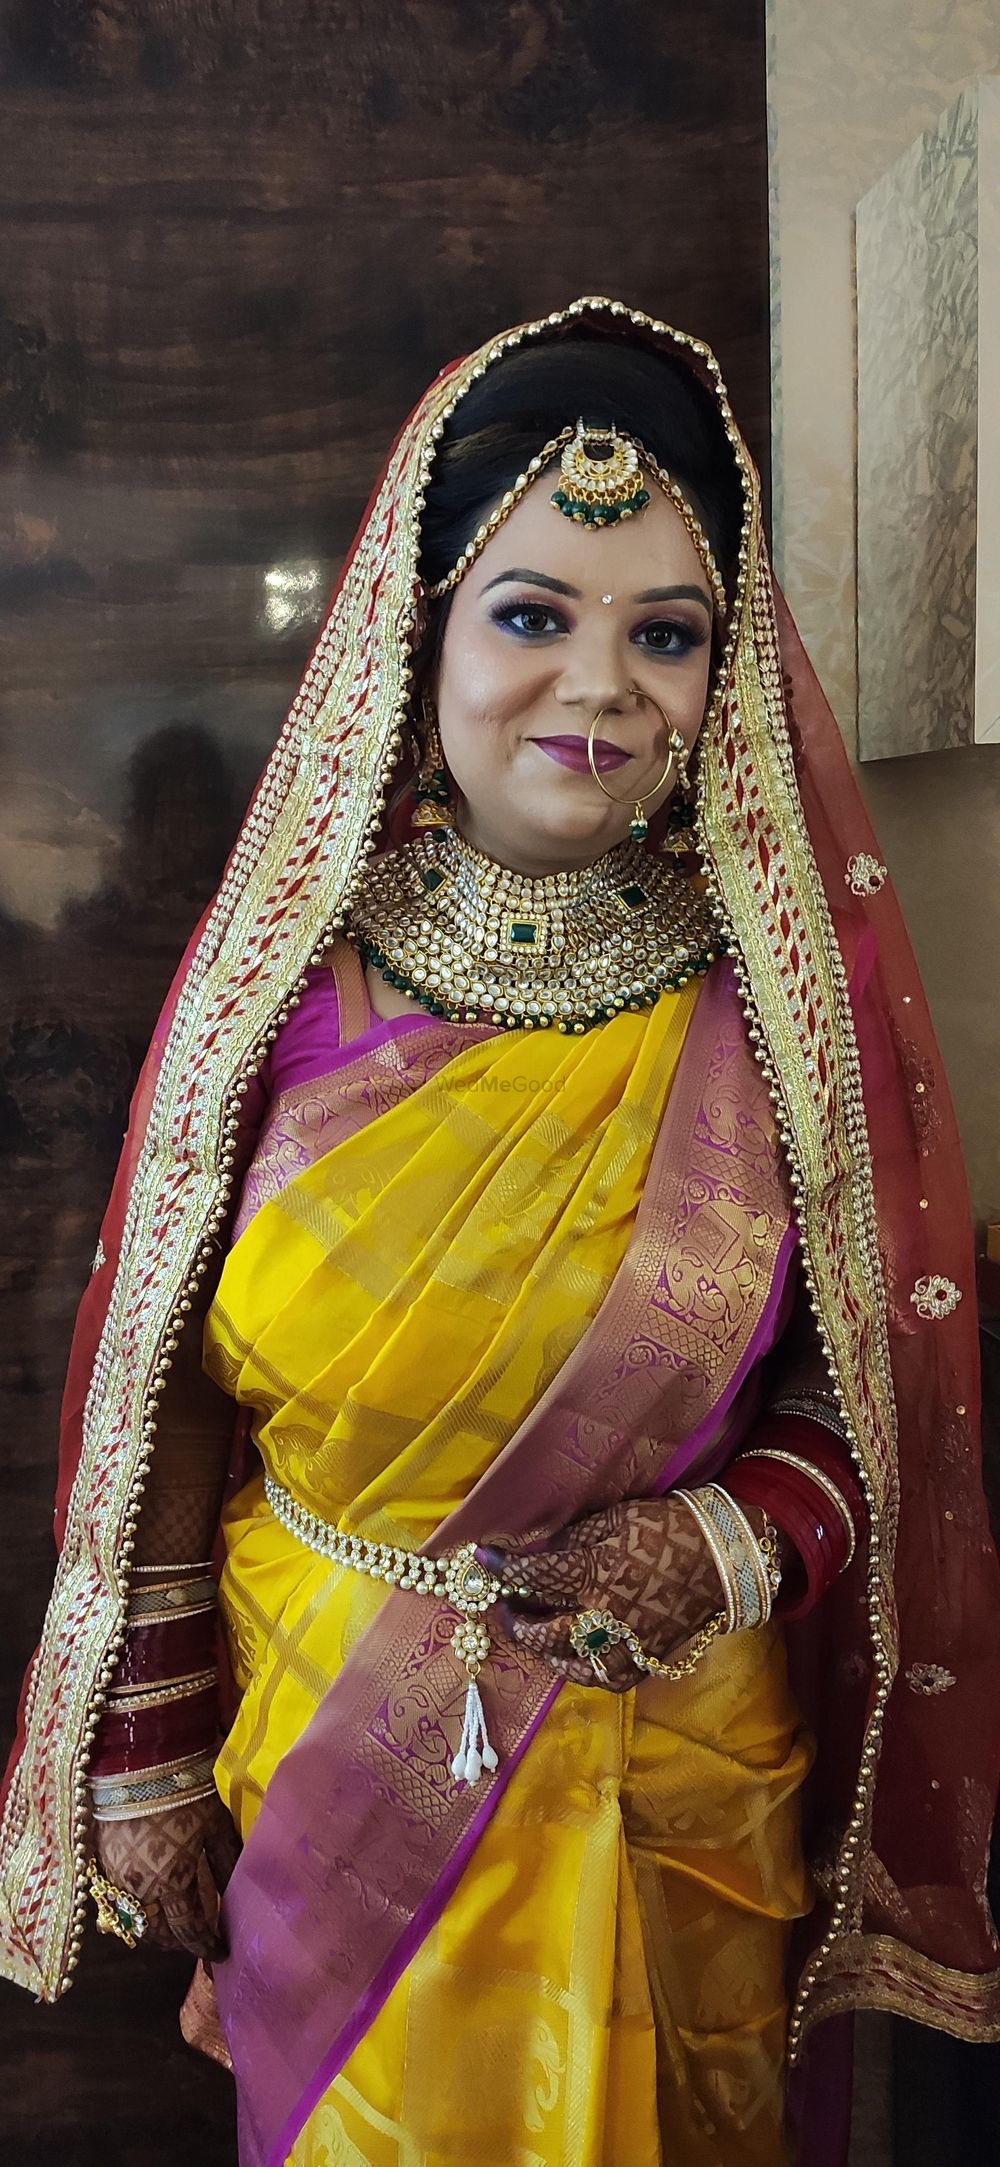 Photo From shivaani (Hd Bridal makeup) day wedding make up - By Heena Batra Makeovers